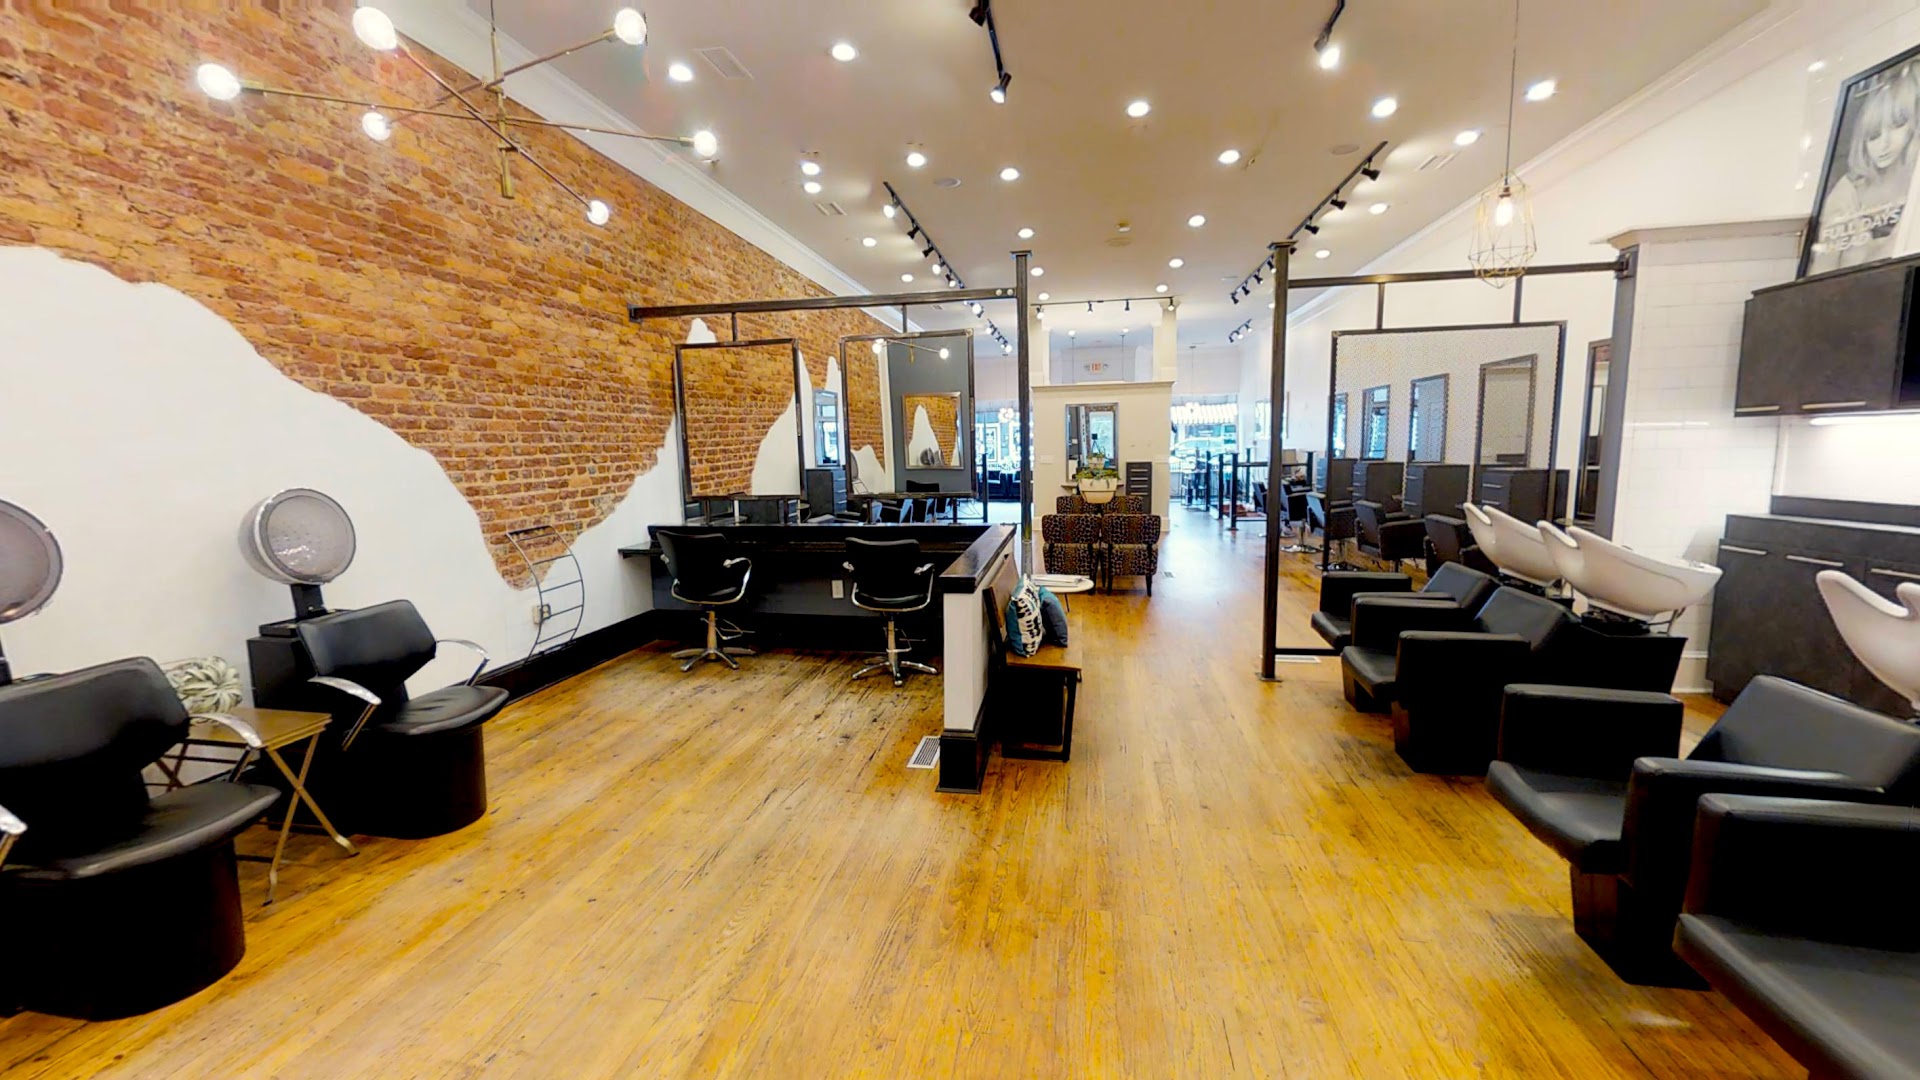 Studio 93 Hair Salon | Hair salon in Buford, GA